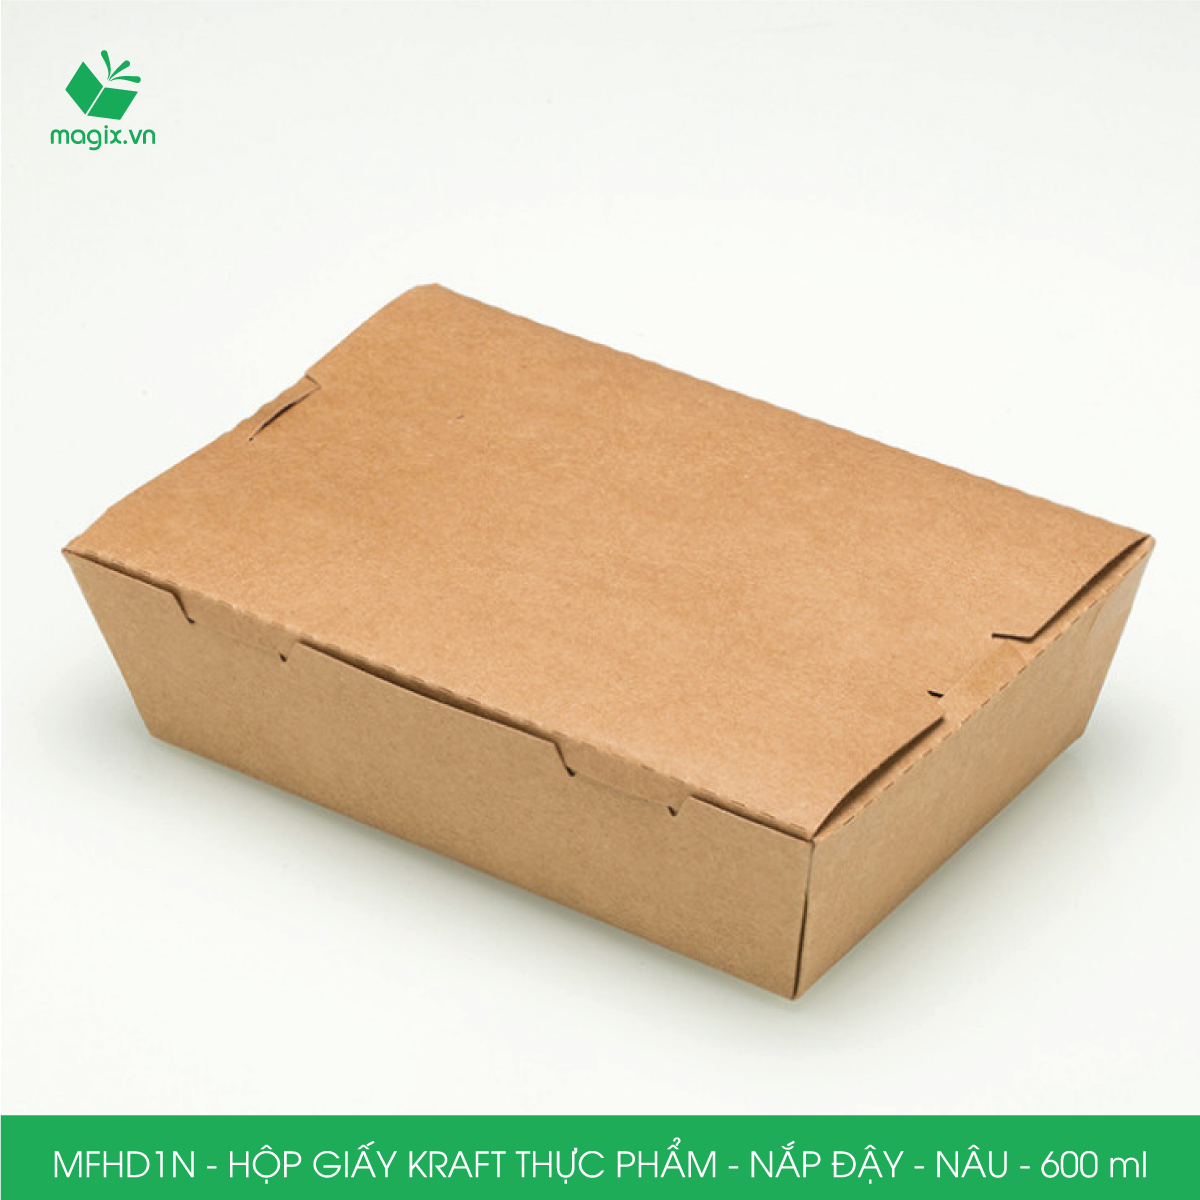 MFHD1N - Combo 25 hộp giấy kraft thực phẩm 600ml, hộp đựng thức ăn nắp đậy màu nâu, hộp gói đồ ăn mang đi